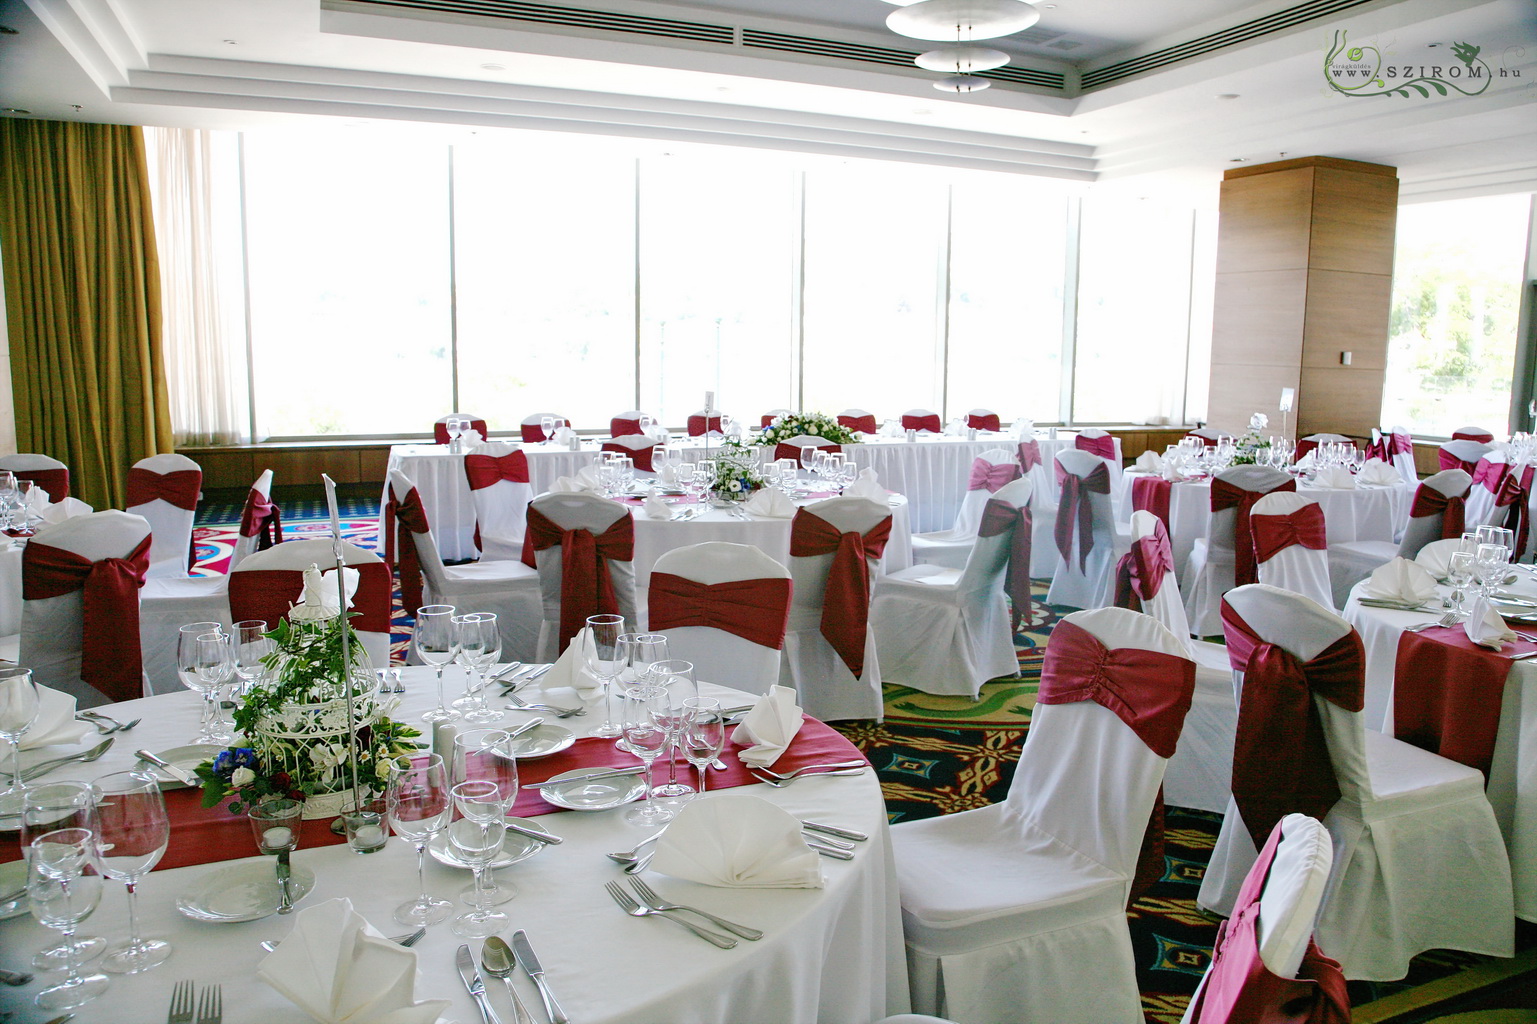 Asztaldísz kalitkában (szarkaláb, inkaliliom, bokros rózsa, borostyán) Marriott Hotel Budapest, esküvő